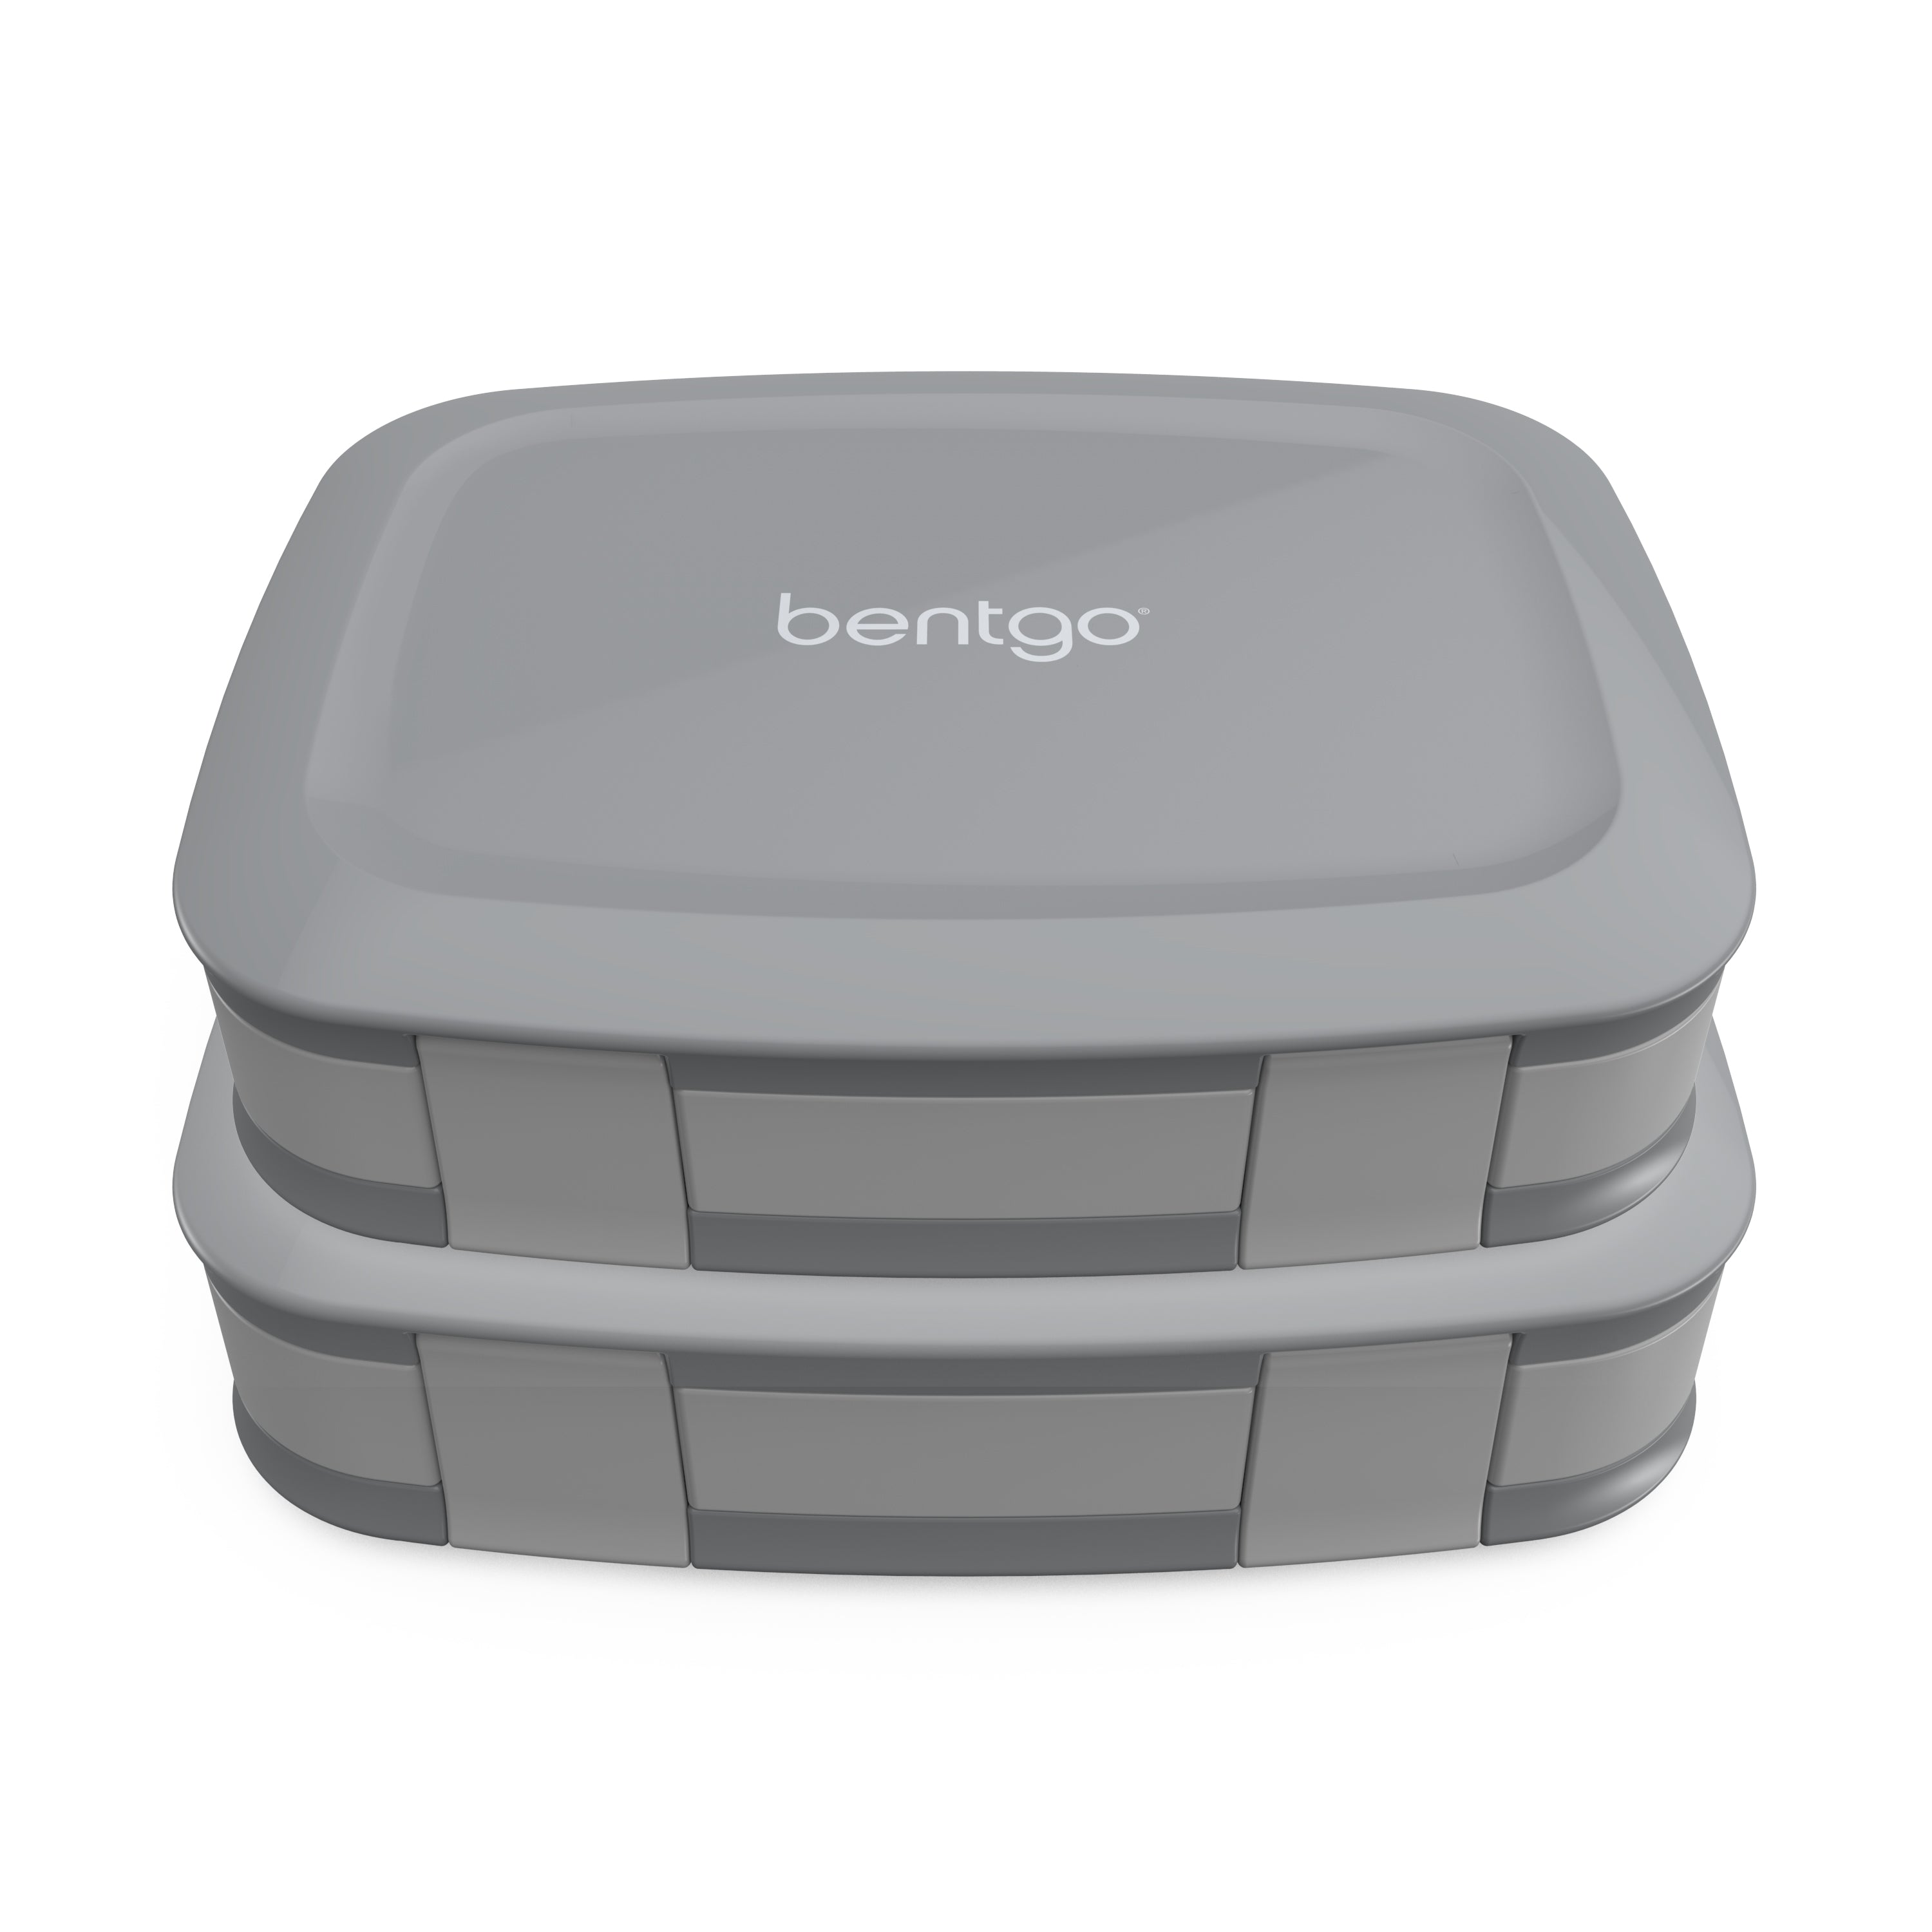 Lonchera Bentgo Fresh, paquete de 2 - Aqua - Unlimited Cellular